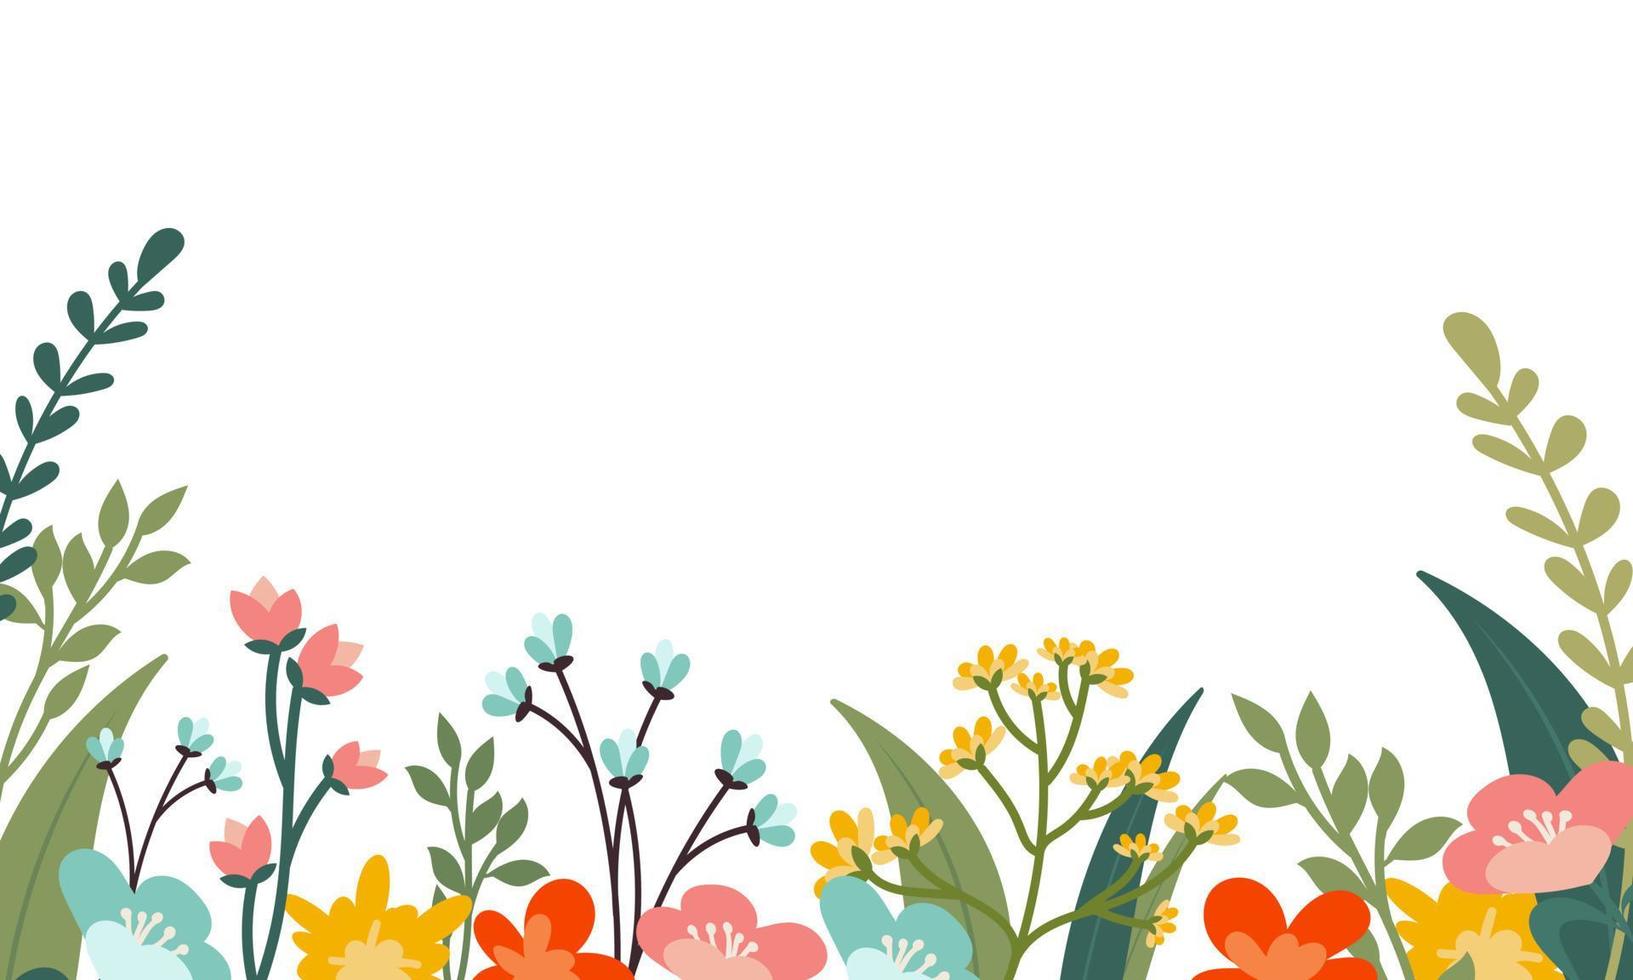 banner vettoriale minimalista di piante. floreale disegnato a mano, erba, rami, foglie su sfondo bianco. modello orizzontale semplice verde. stile piatto semplice. tutti gli elementi sono isolati e modificabili